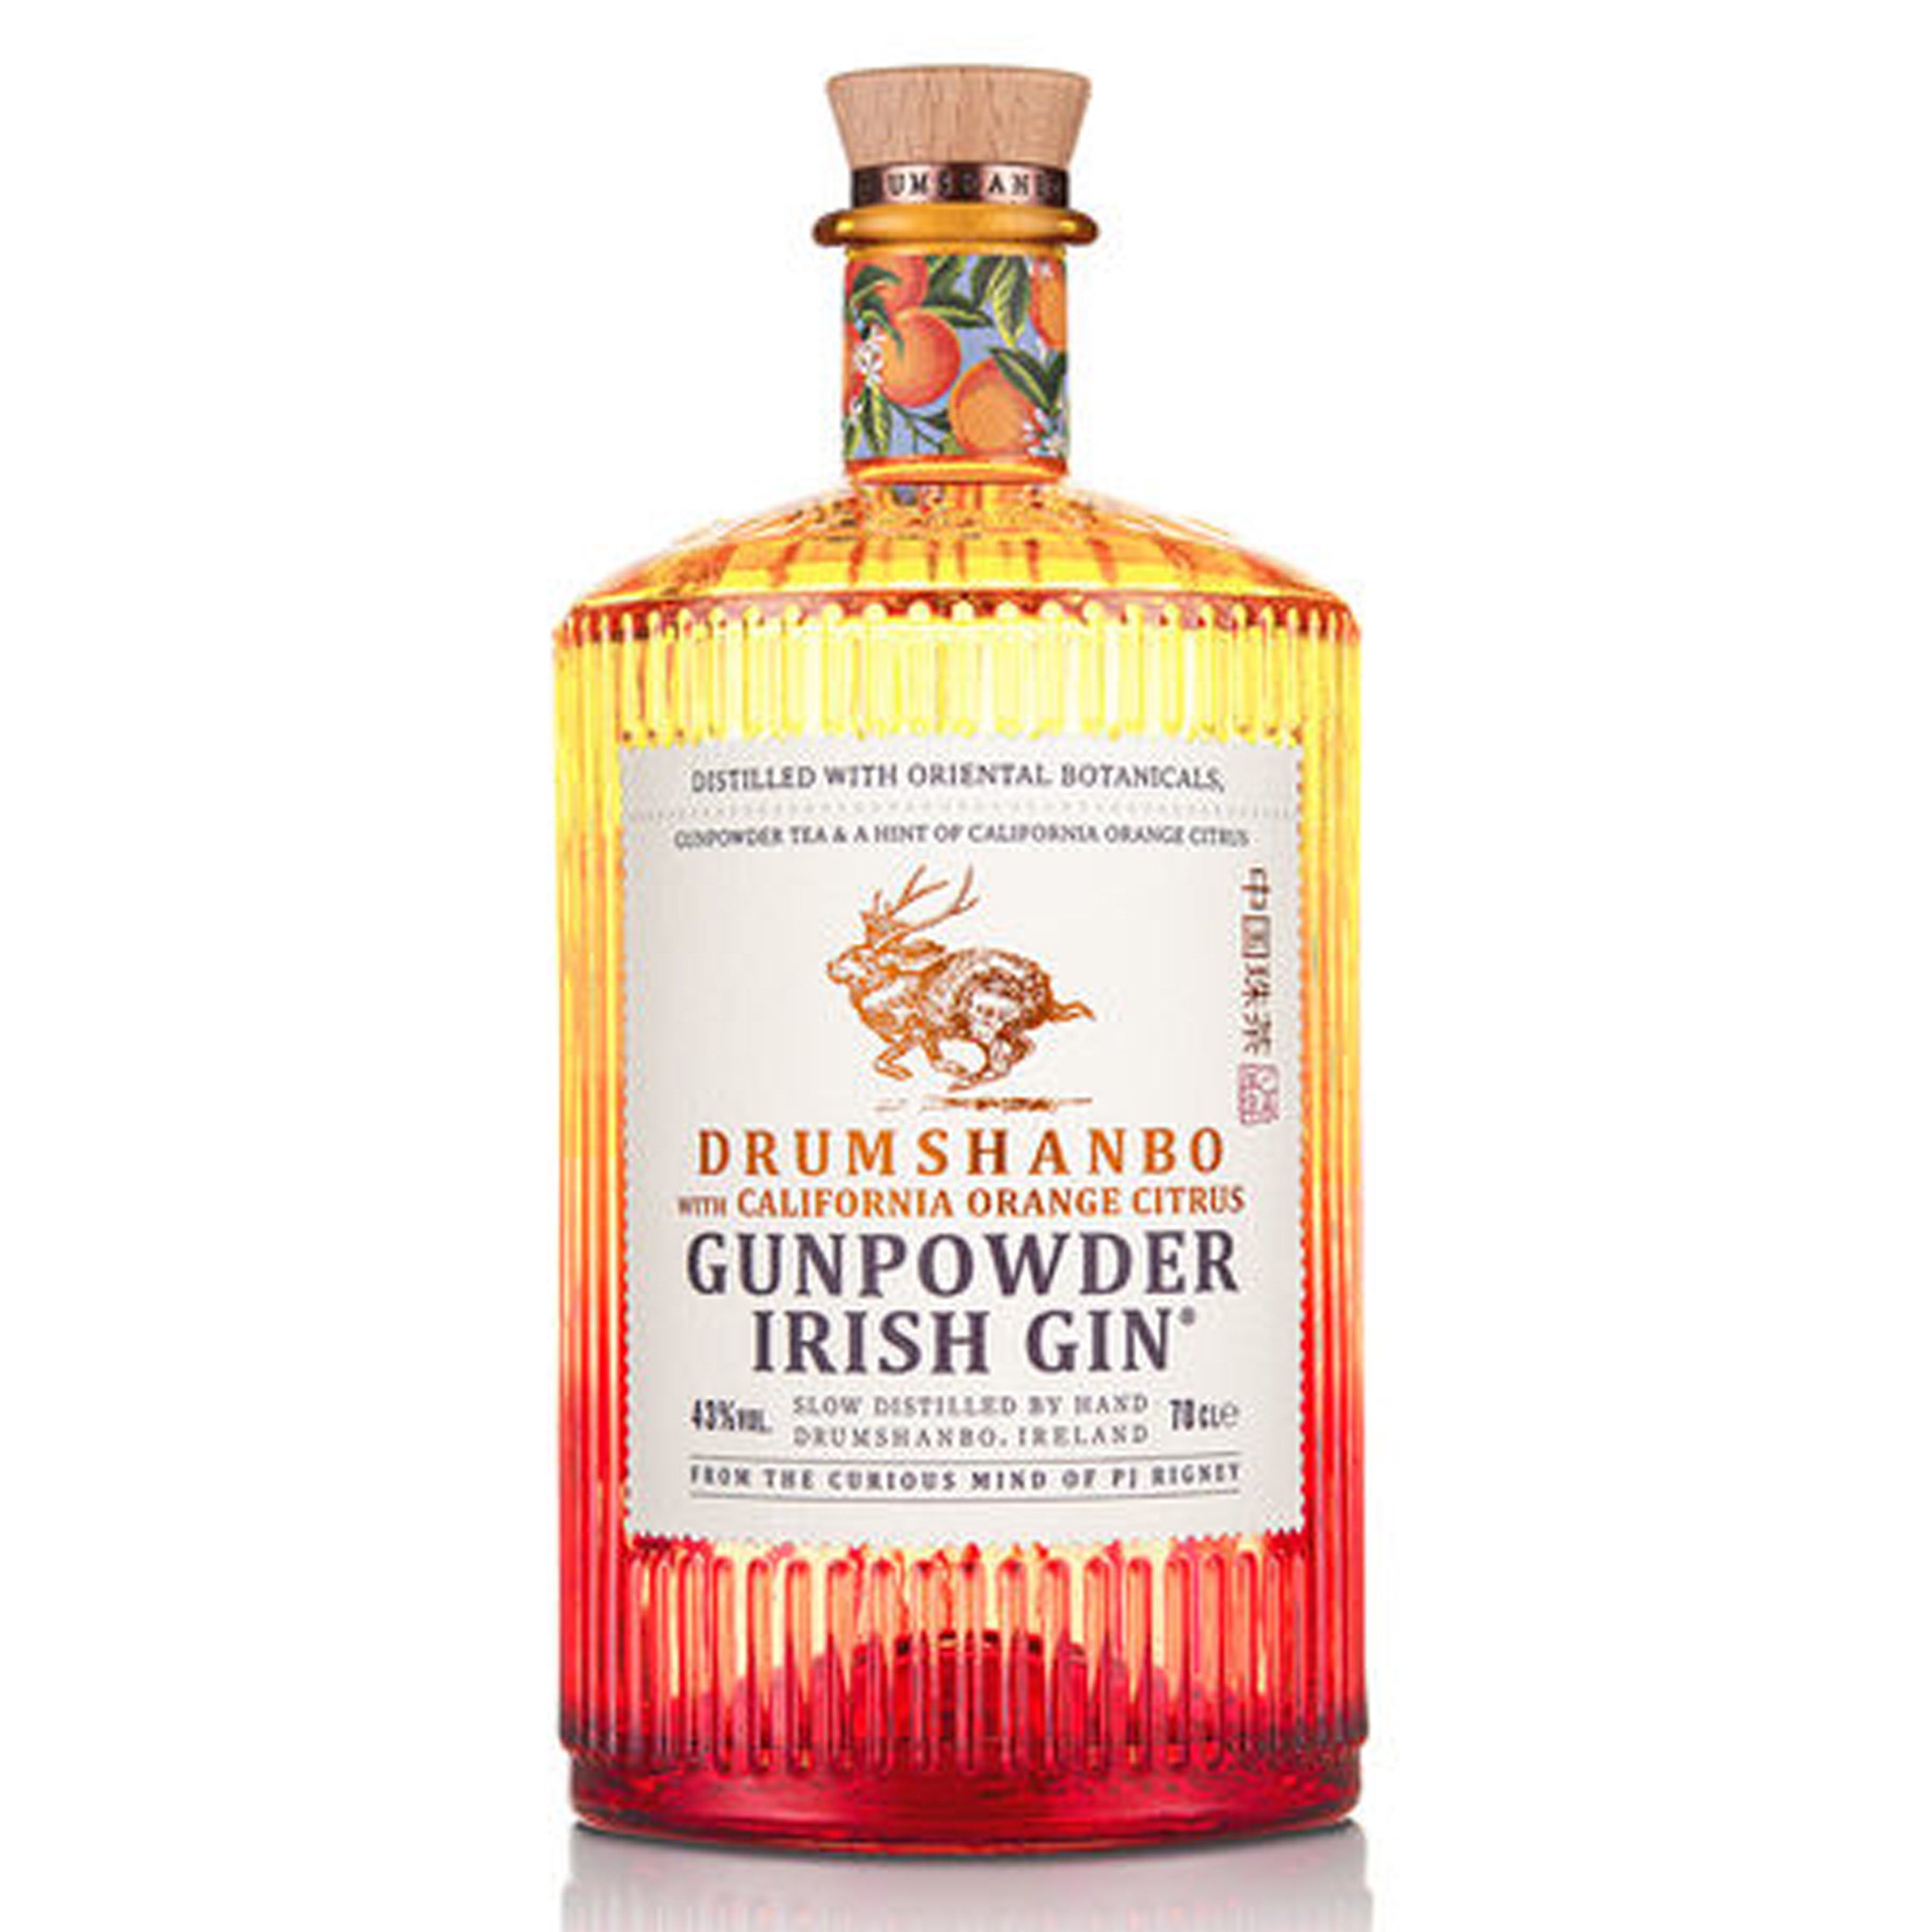 Drumshanbo Gunpowder Orange Citrus Gin